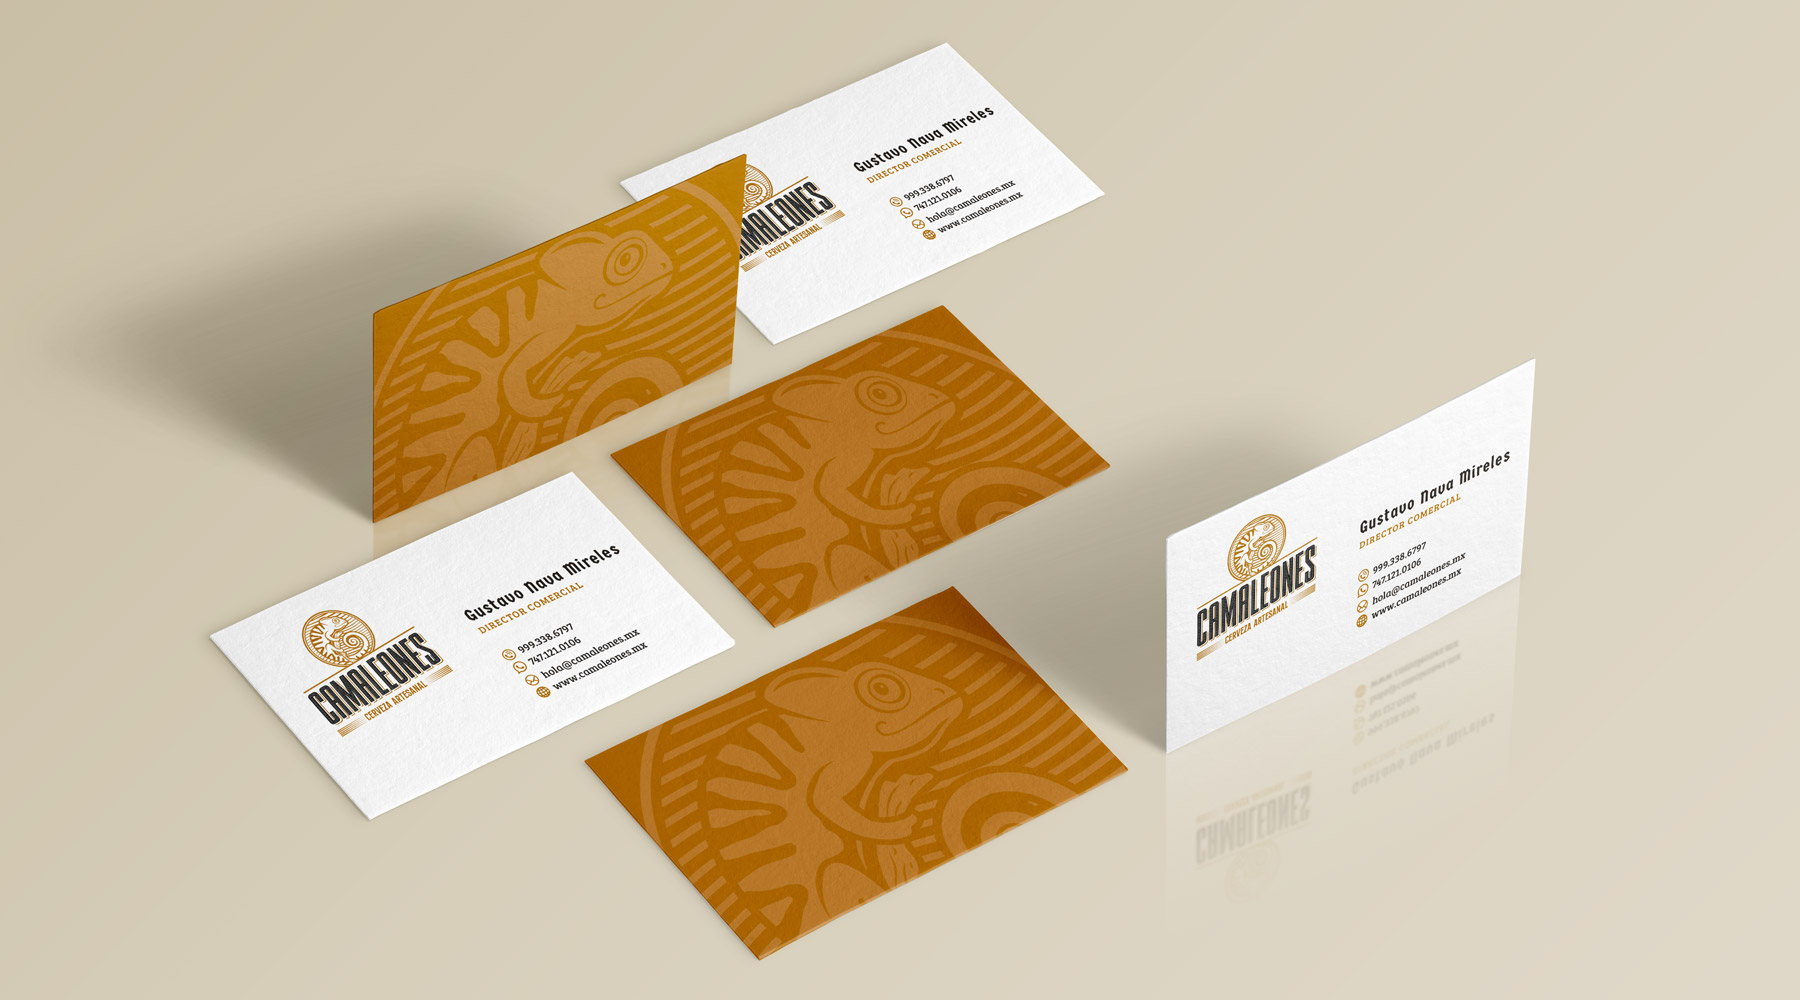 Diseño de tarjetas de presentación para Camaleones | MARKER branding